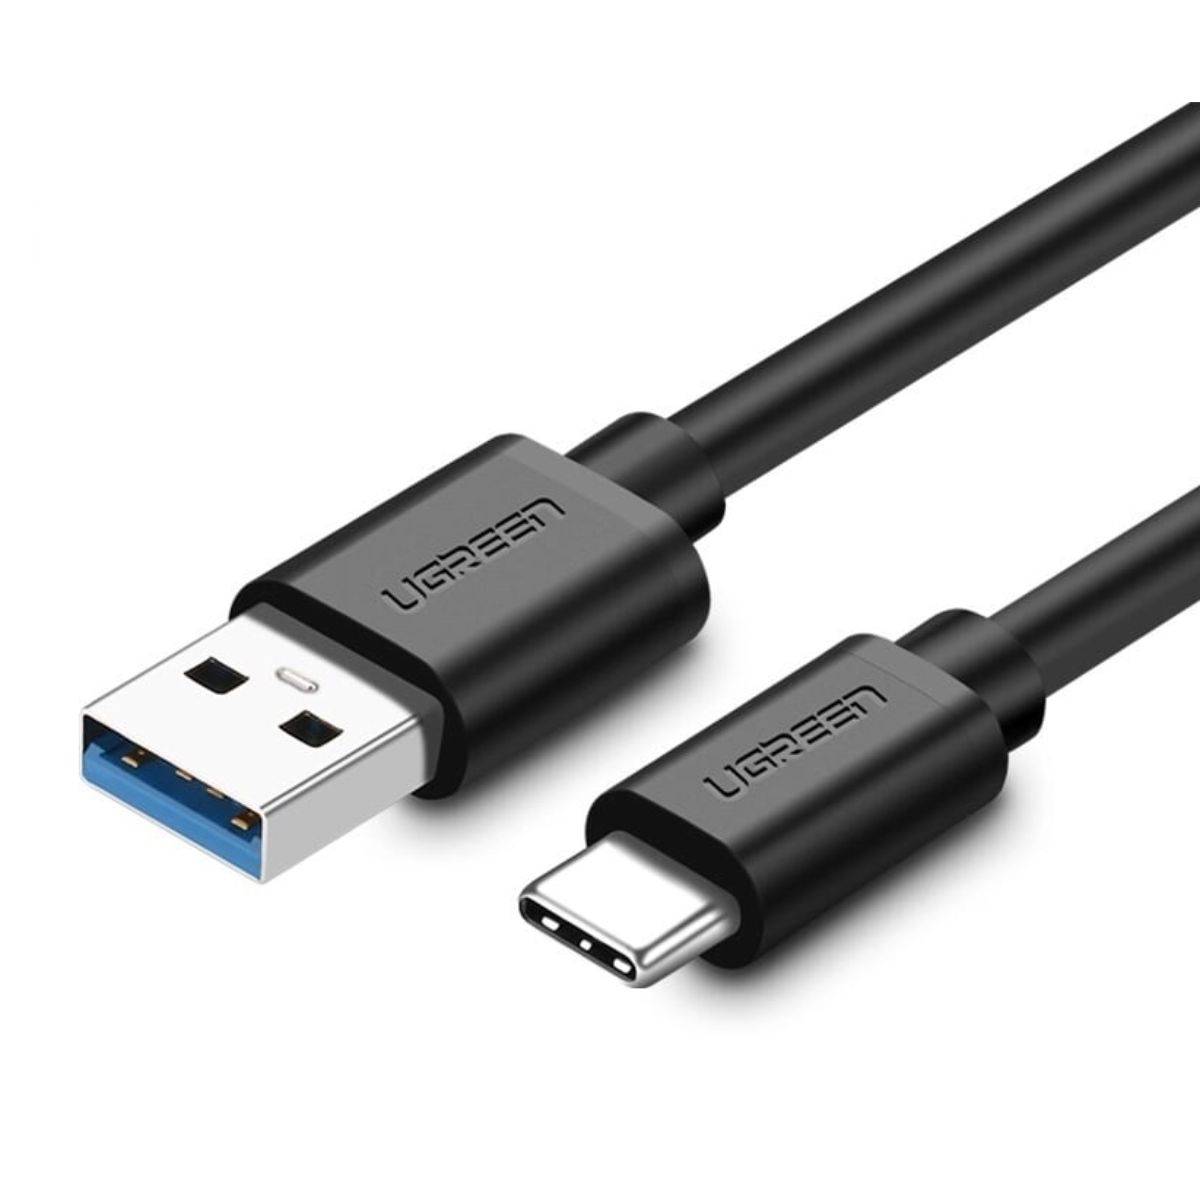 Cáp dài 2m USB type C Ugreen 20884 US184 màu đen, hỗ trợ sạc nhanh 3A